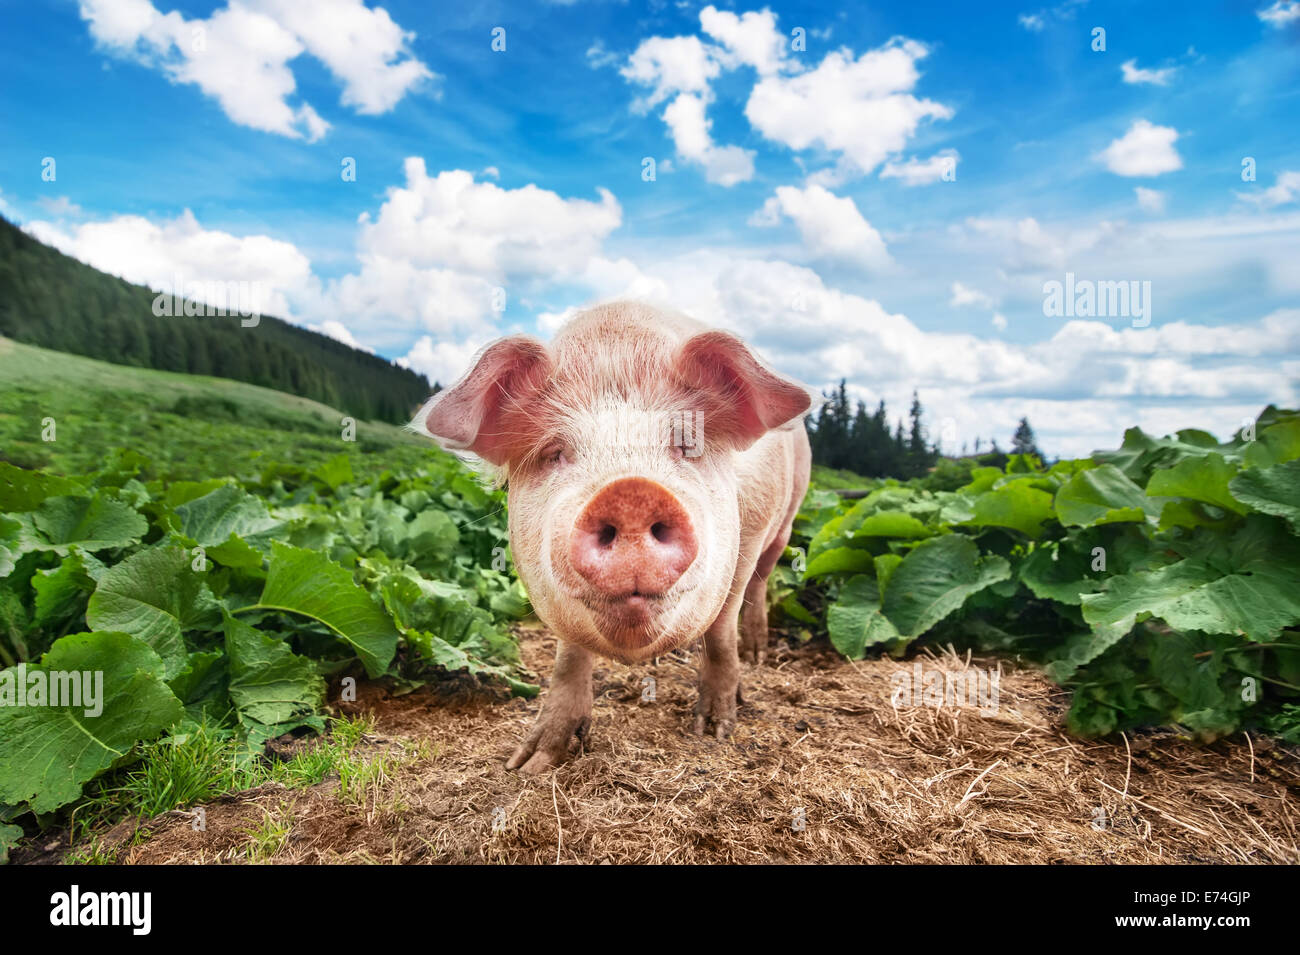 Lindo cerdo en pastoreo de verano Montañas de pradera de pasto bajo un cielo azul. La agricultura orgánica natural de fondo Foto de stock